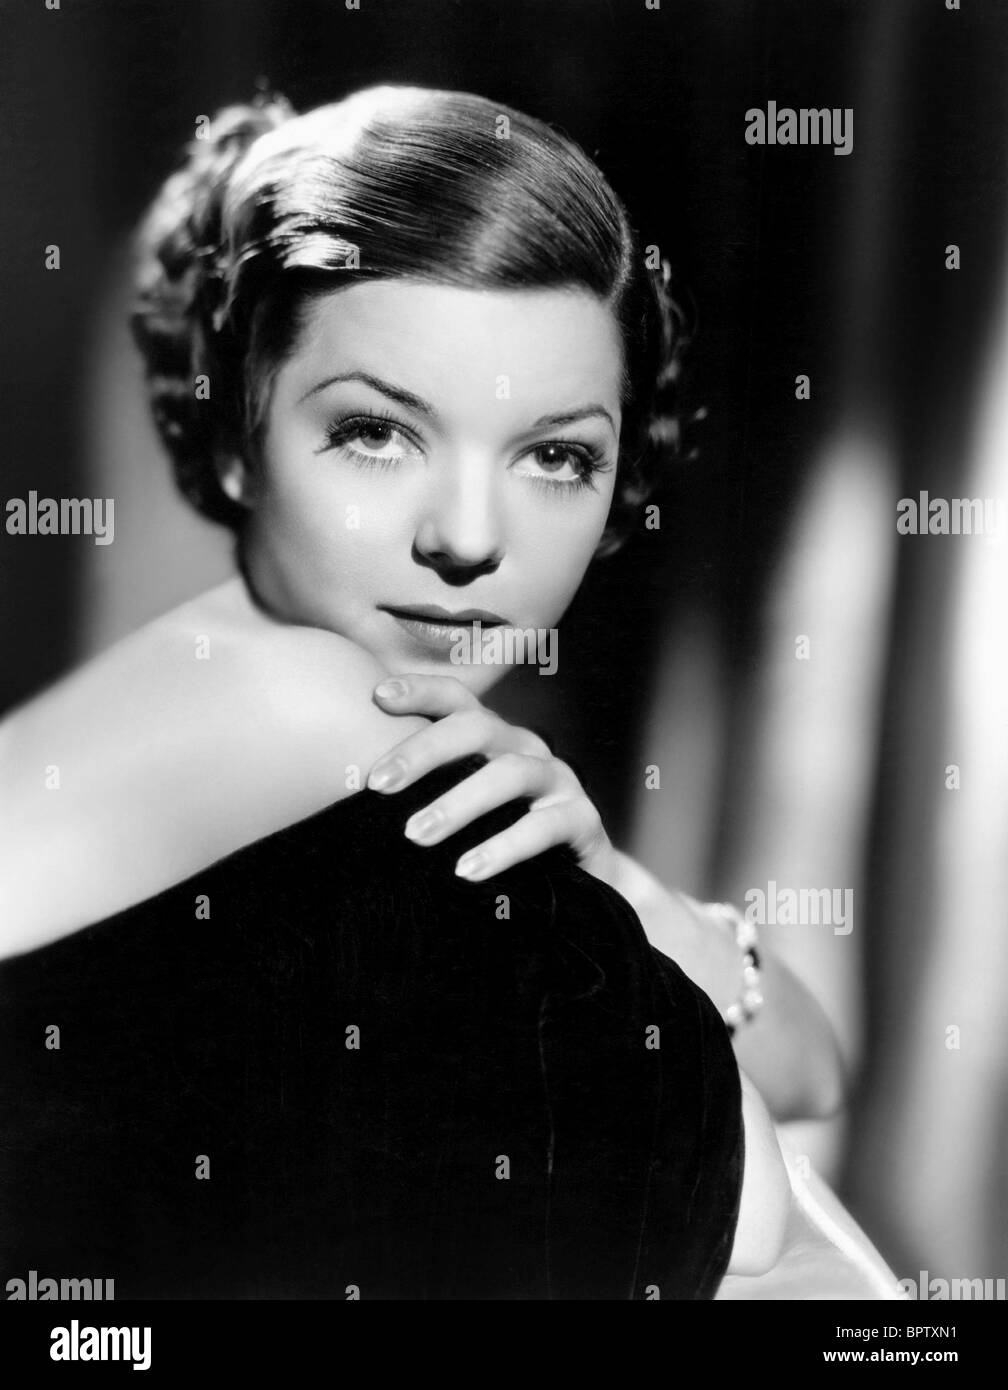 La chanteuse actrice Frances Langford (1935) Banque D'Images